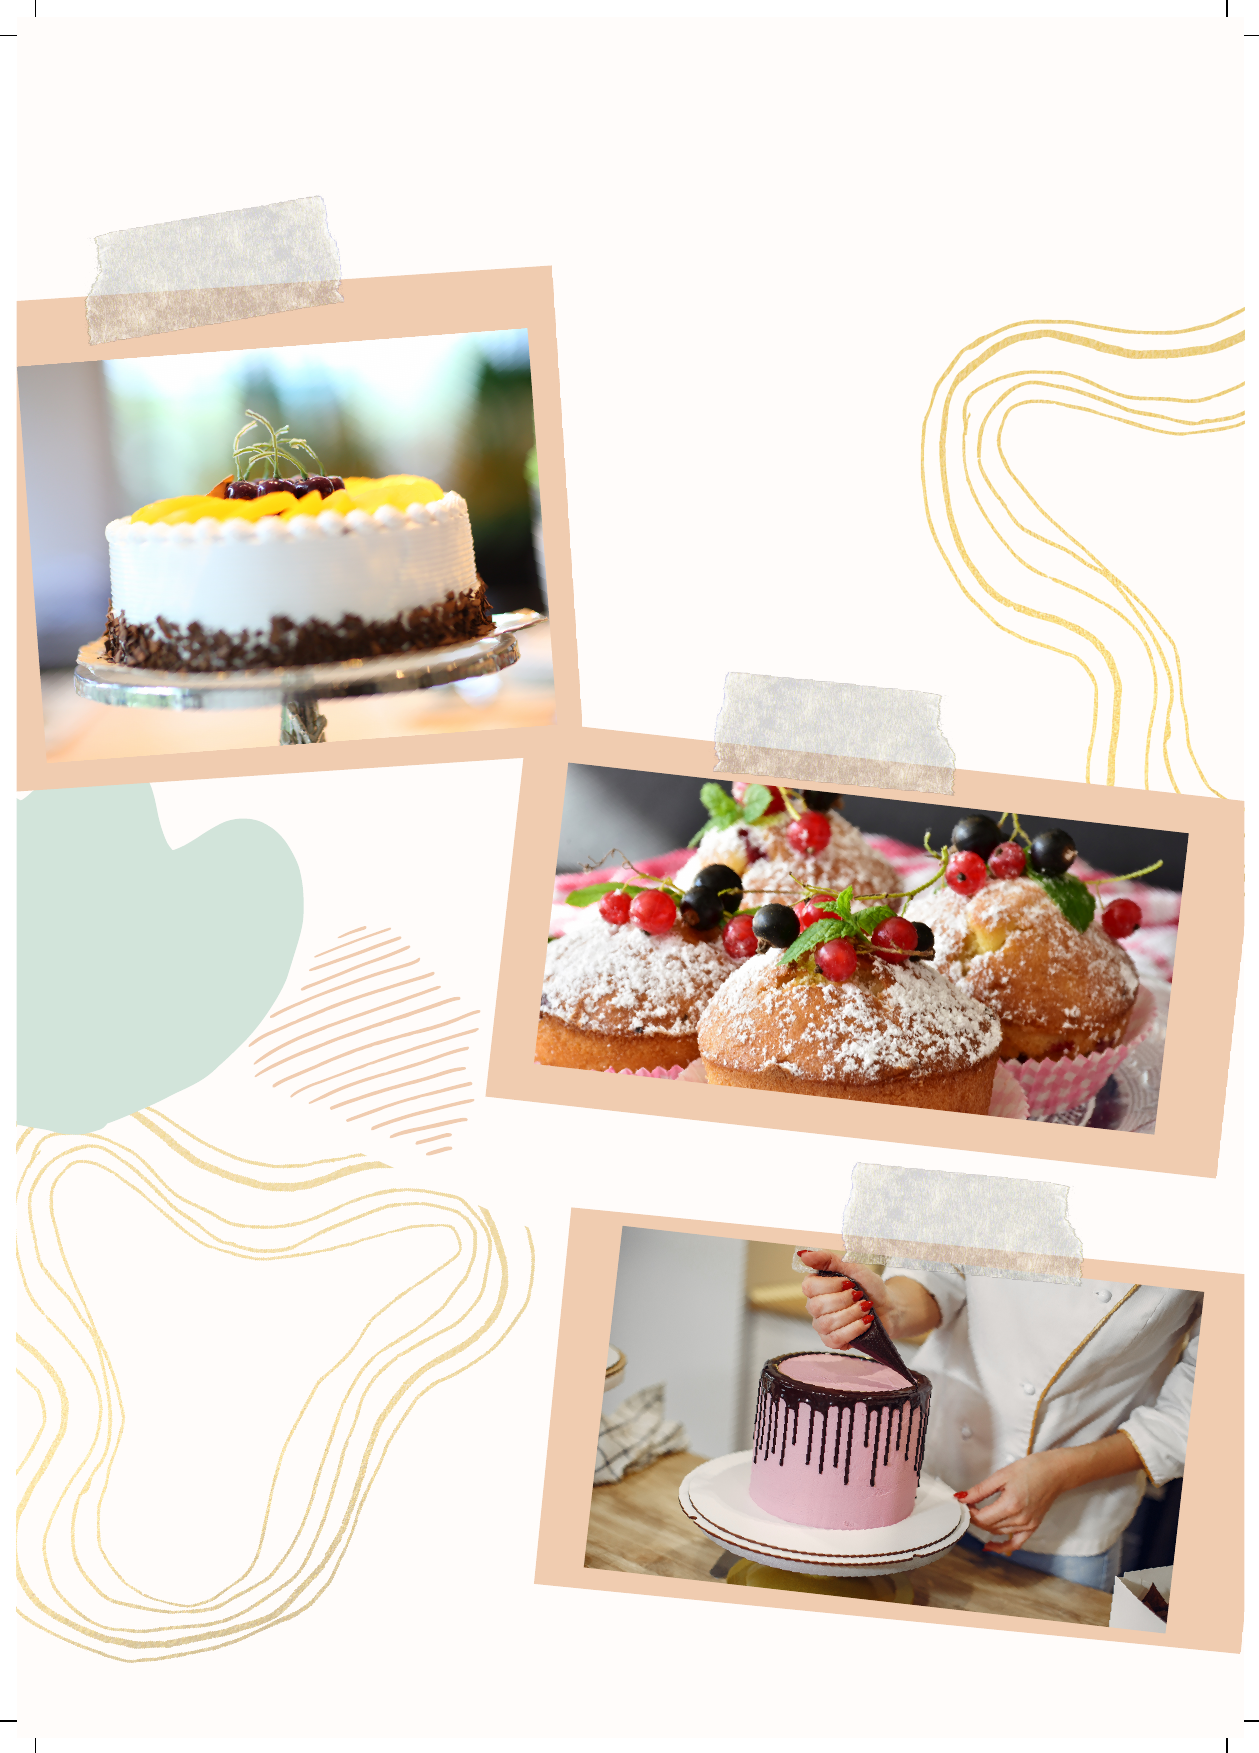 Erros ao fazer bolos: listamos os principais e como evitá-los